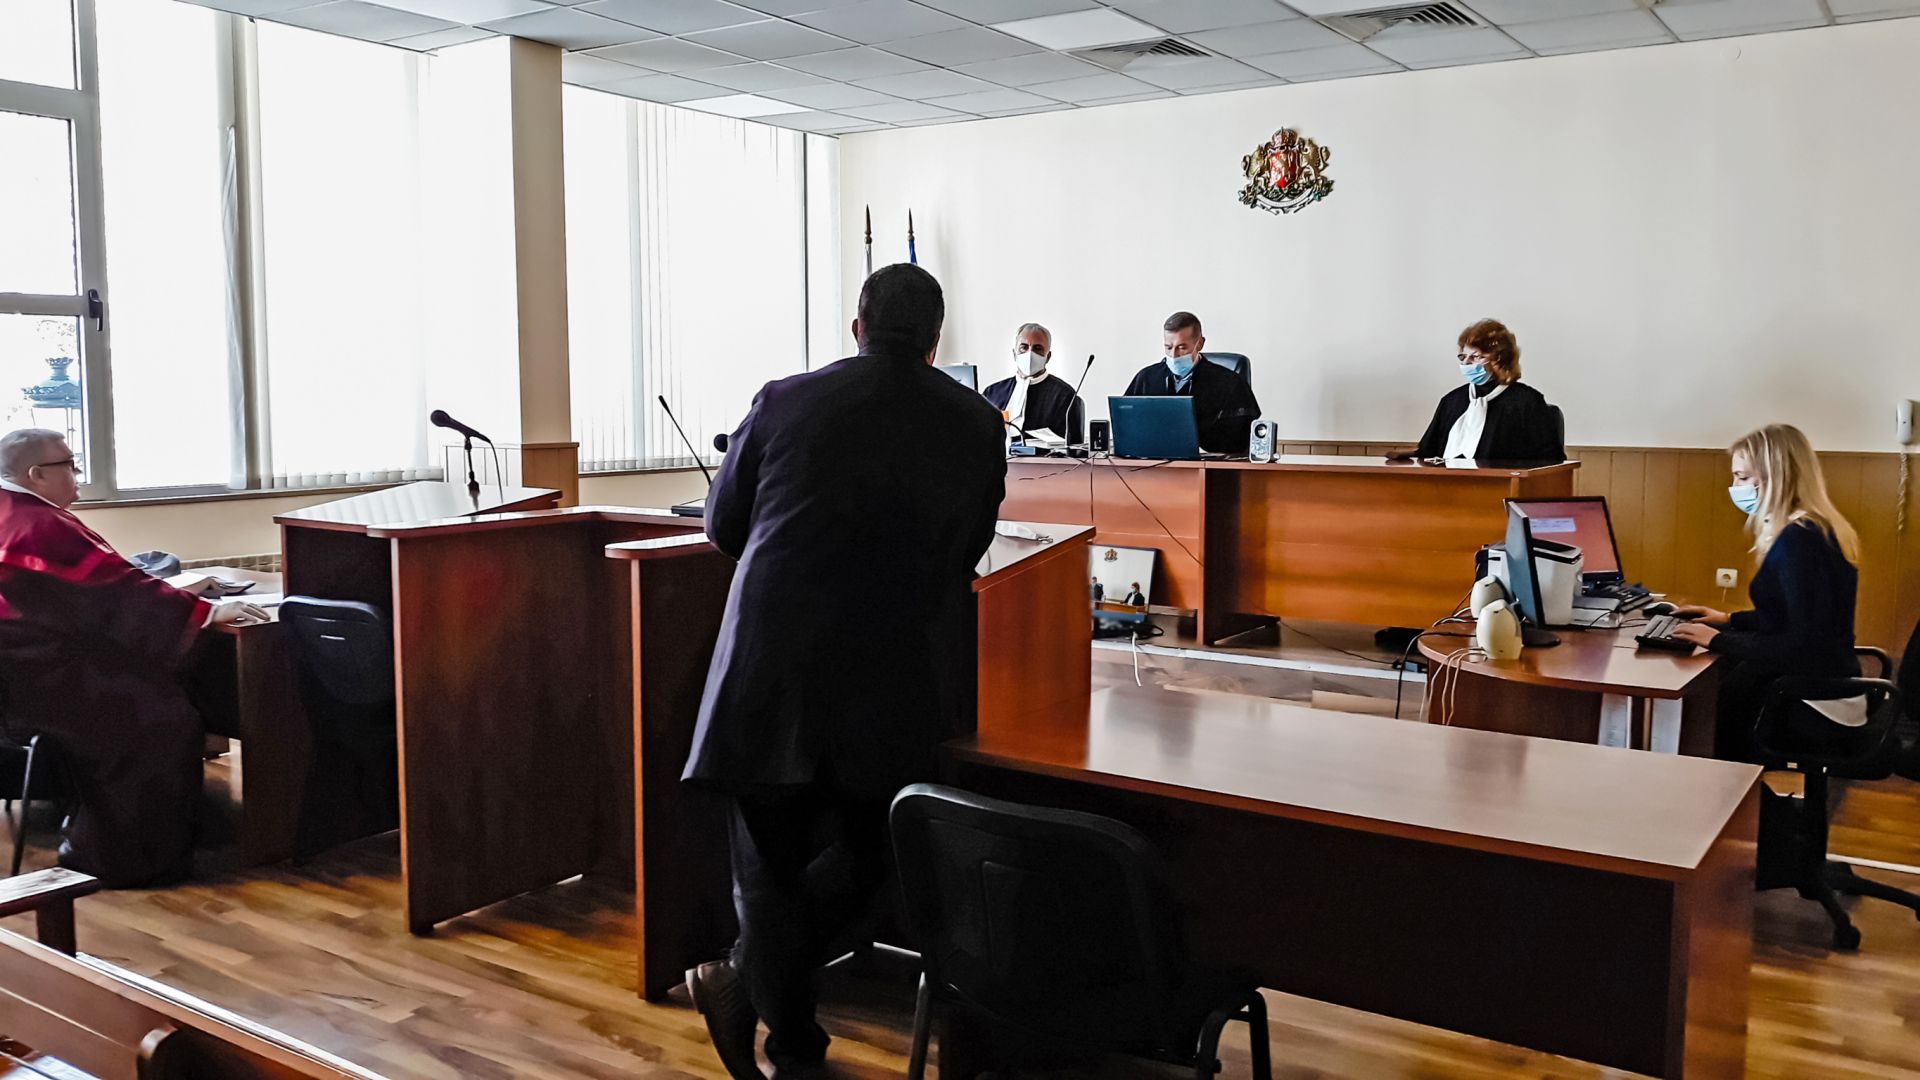 Заседанието по разглеждане на мярката бе дистанционно, като В. Г. се включи в делото чрез видеоконферентна връзка от ареста в Хасково, а адвокатът му, прокурорът и съдебният състав бяха в зала номер 2 на Апелативен съд – Пловдив